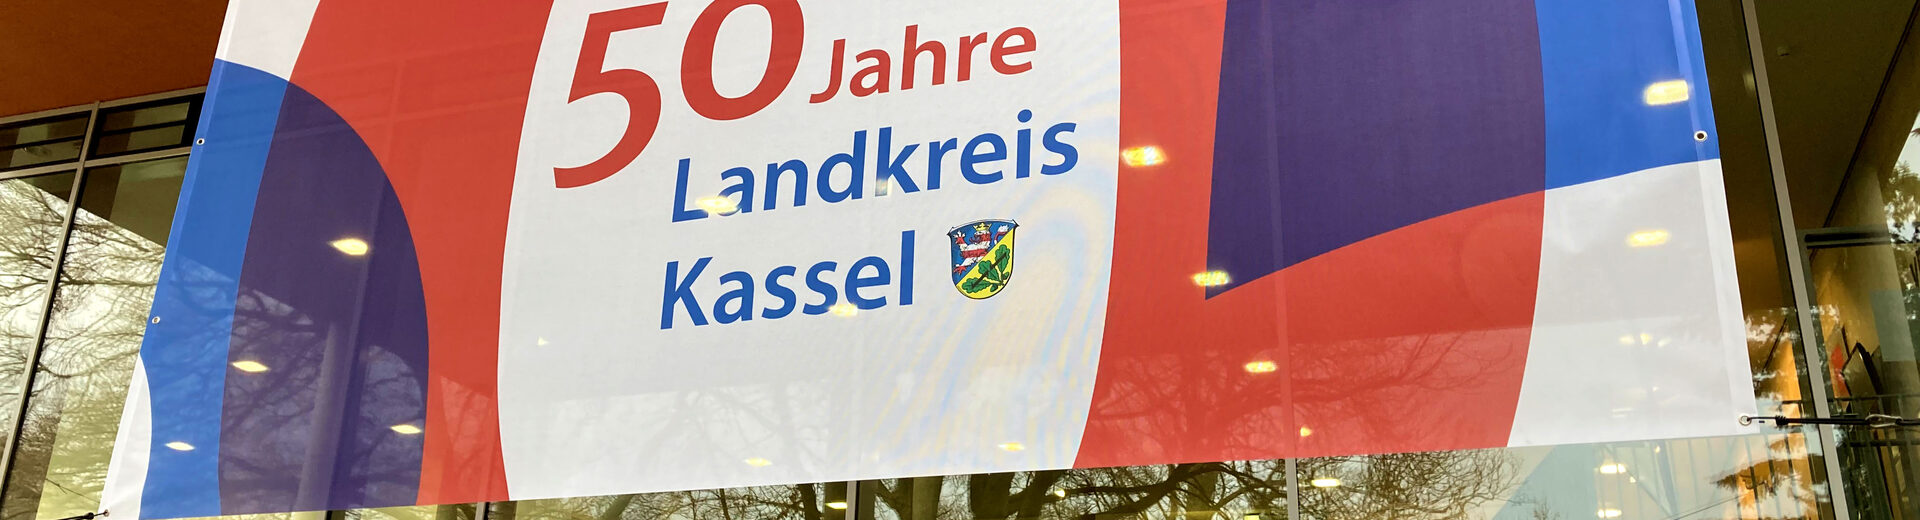 Banner vor Kreishaus